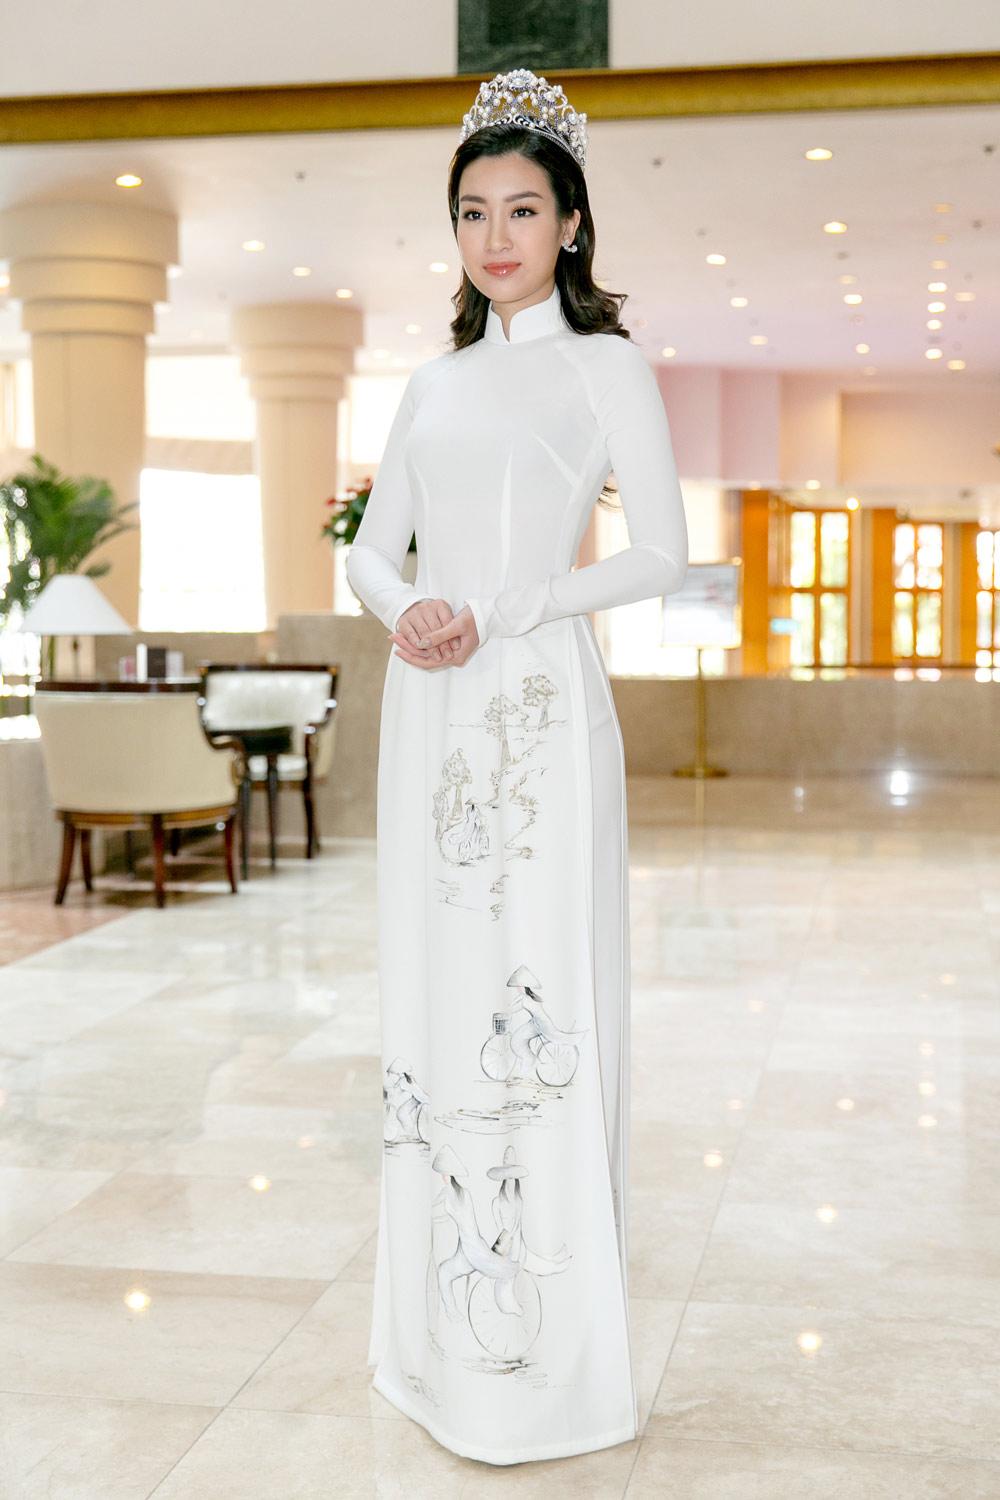 Chân dài sexy nhất Việt Nam mắc thảm họa nội y thường thấy với áo dài trắng-5